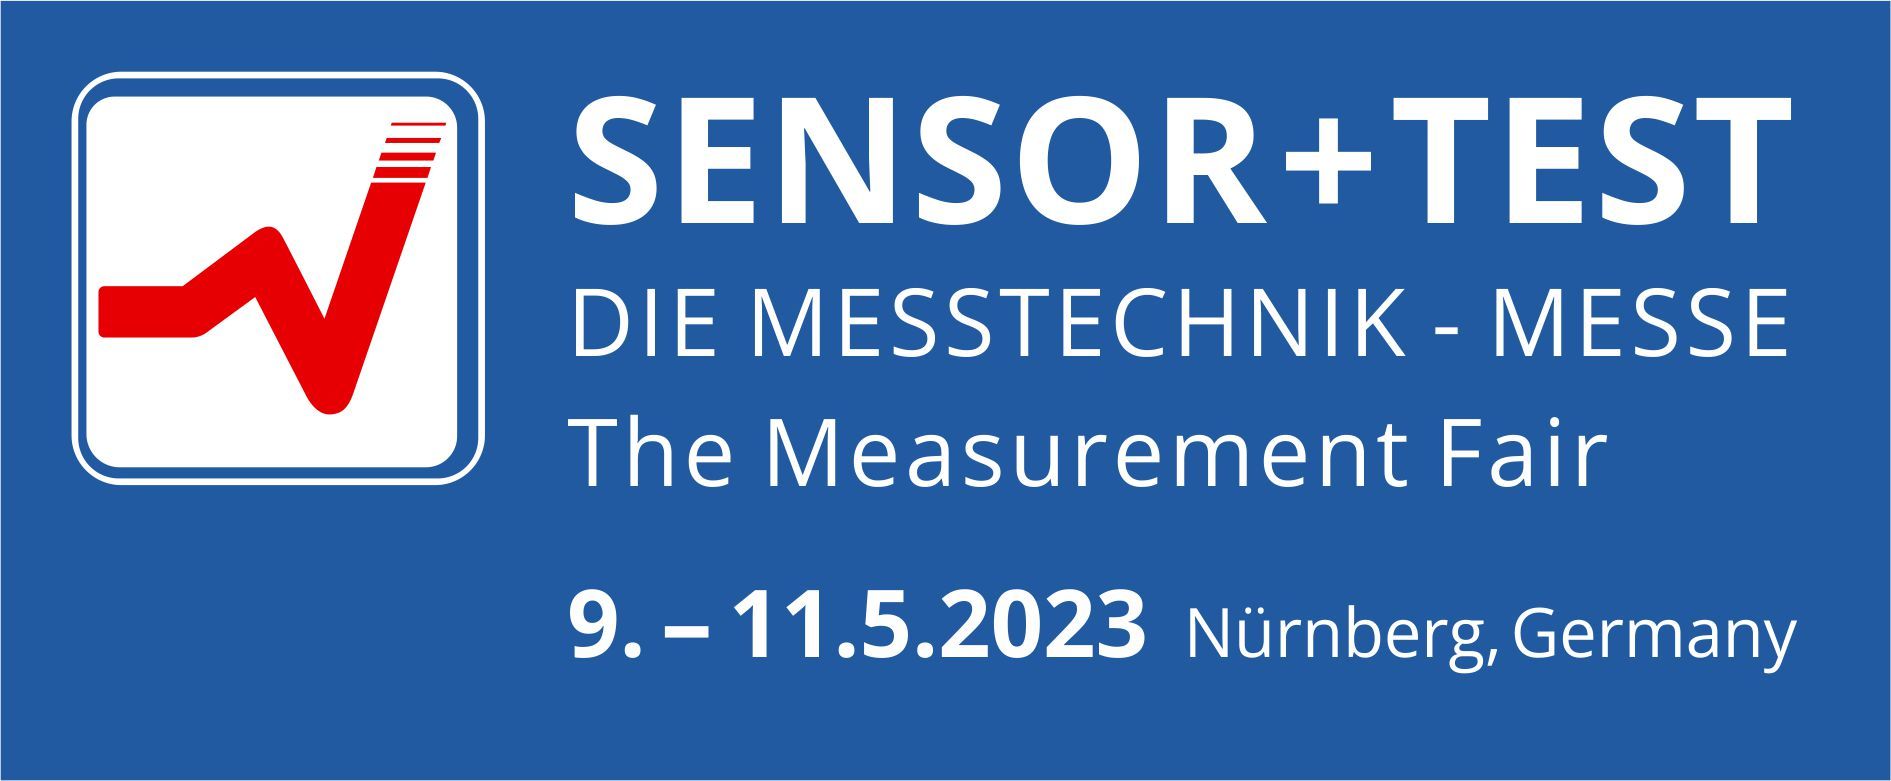 Logo Und Titel Sensor Test 2023 Mit Termin